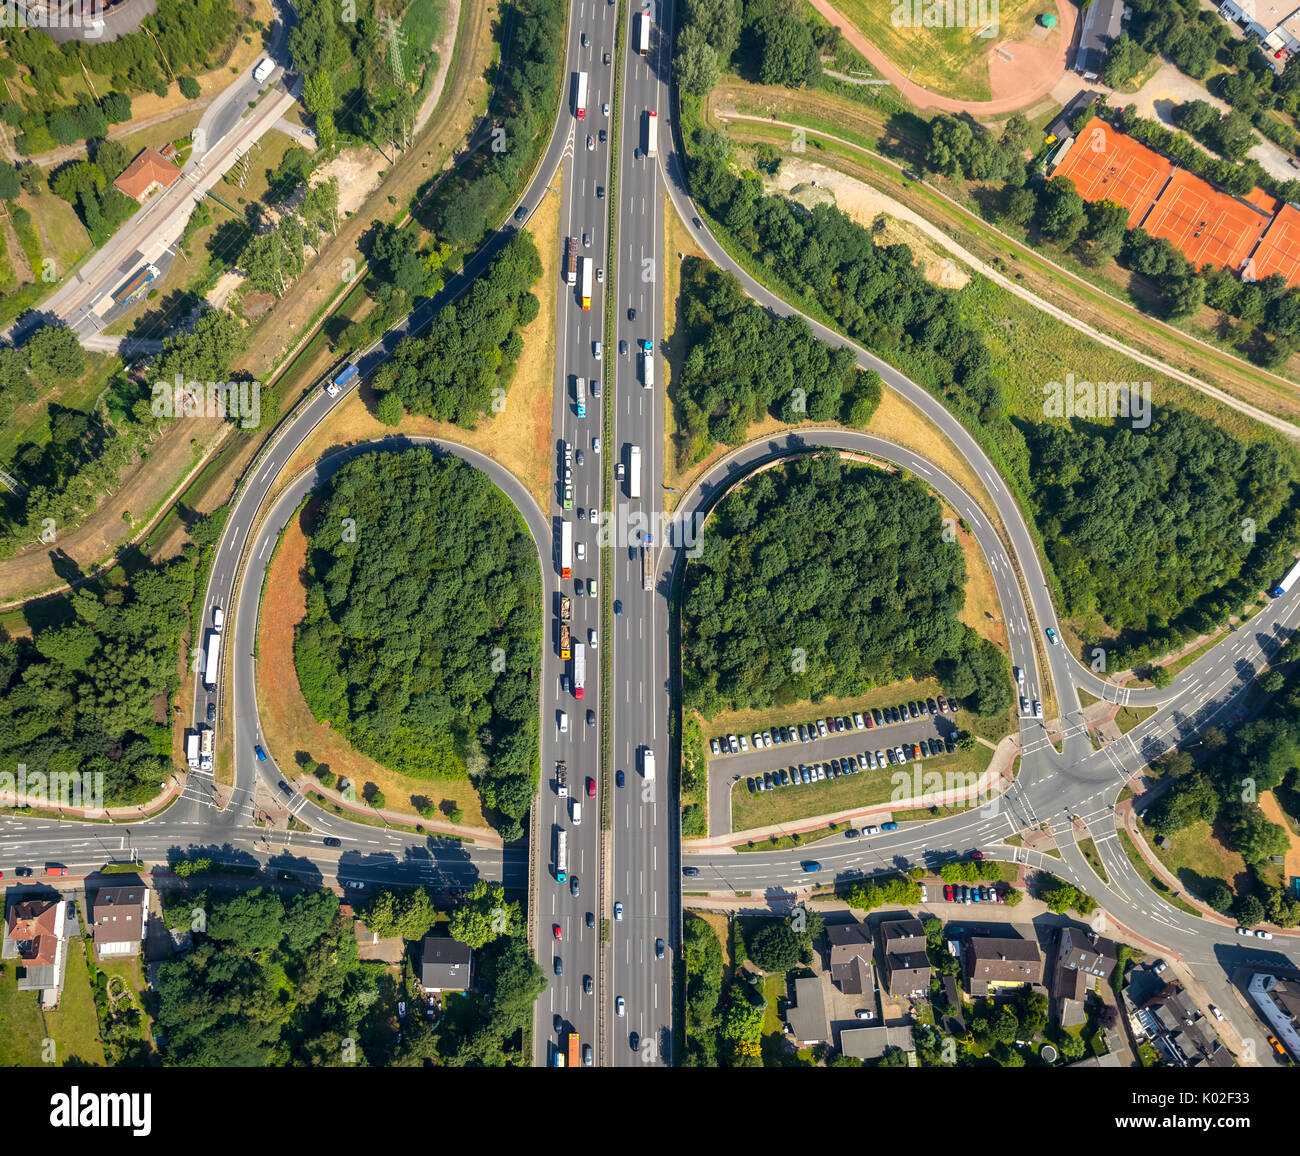 L'autoroute A3, Abfahrt Oberhausen Holten, Straßenschleifen,Autobahnabfahrt, Oberhausen, Ruhr, Nordrhein-Westfalen, Deutschland Banque D'Images